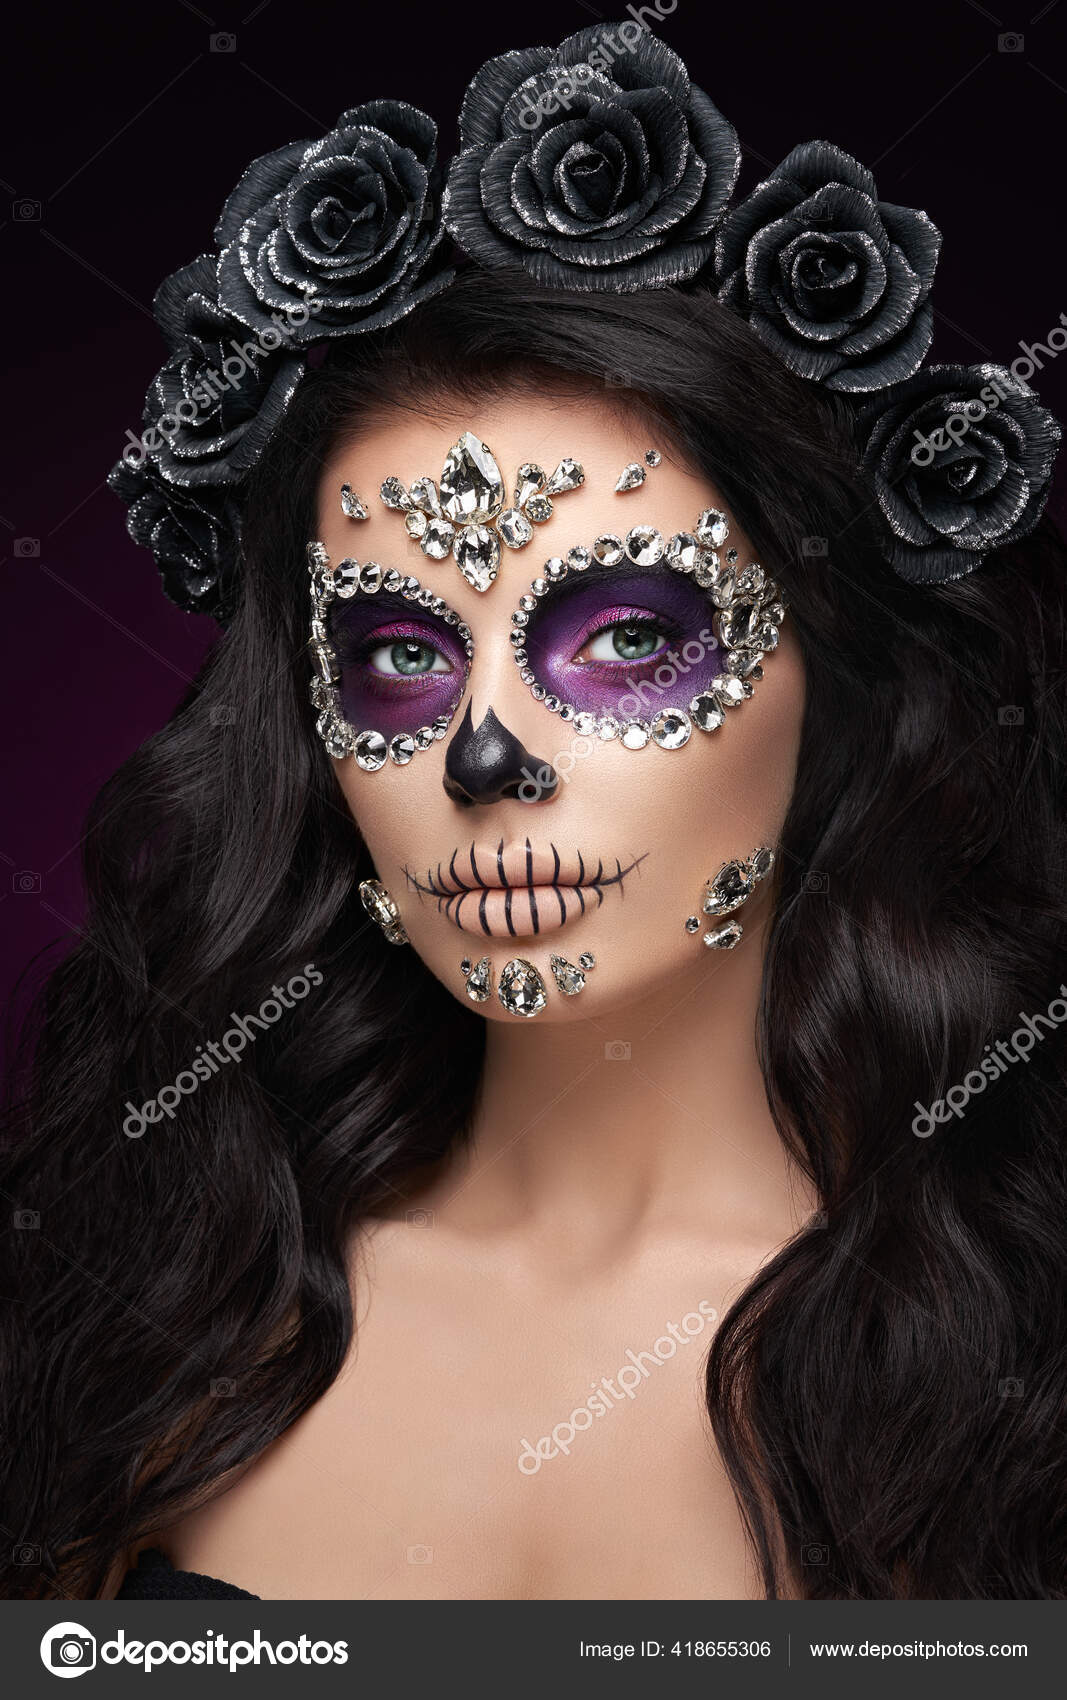 Og hold næve samarbejde Portrait Woman Sugar Skull Makeup Red Background Halloween Costume Make  Stock Photo by ©heckmannoleg 418655306